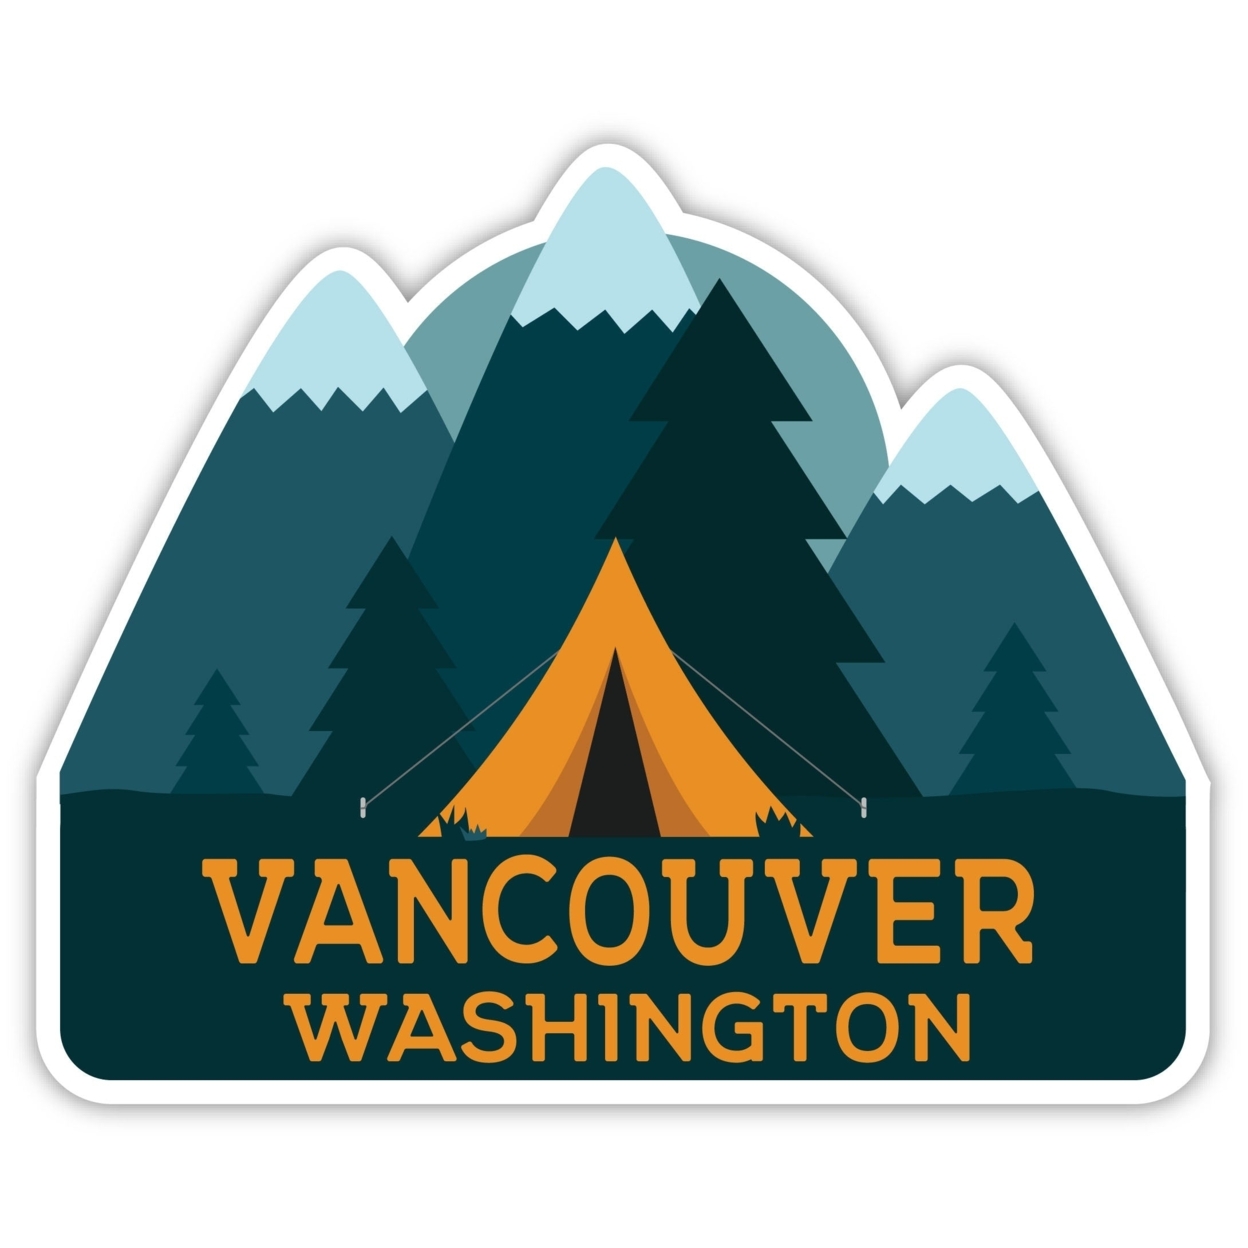 Vancouver Washington Souvenir Decorative Stickers (Choose Theme And Size) - Single Unit, 2-Inch, Tent